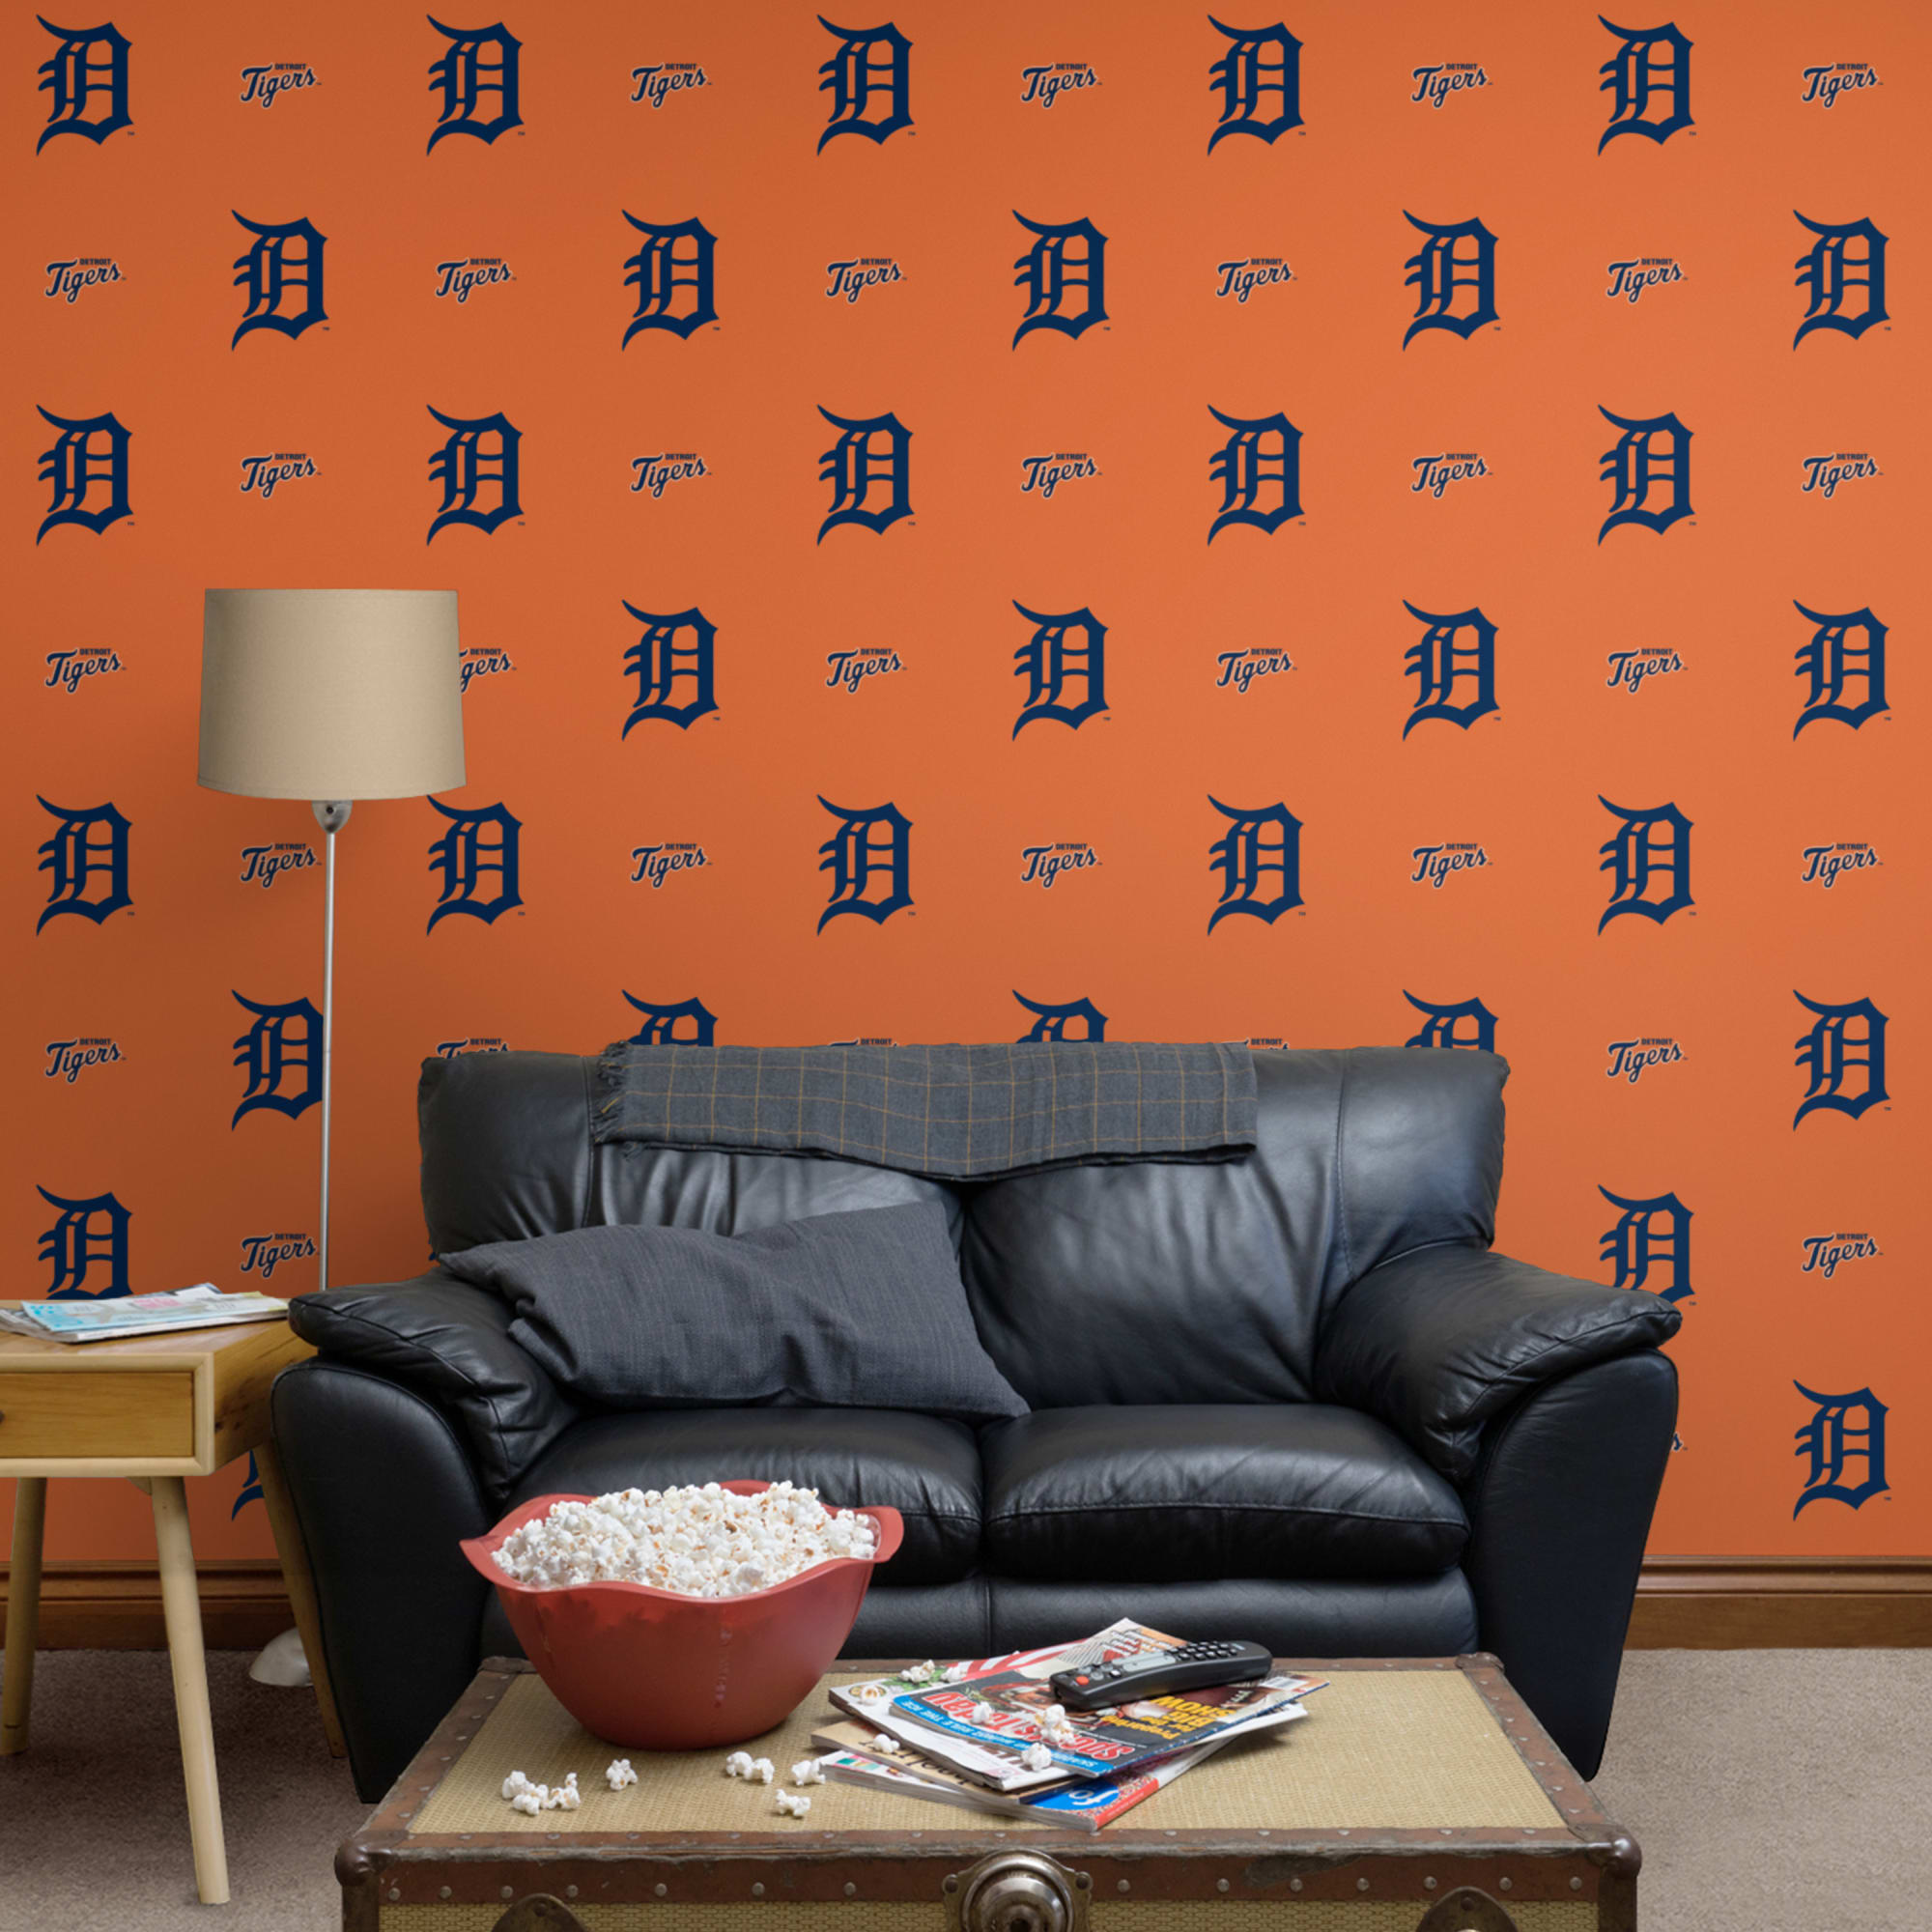 detroit tigers wallpaper